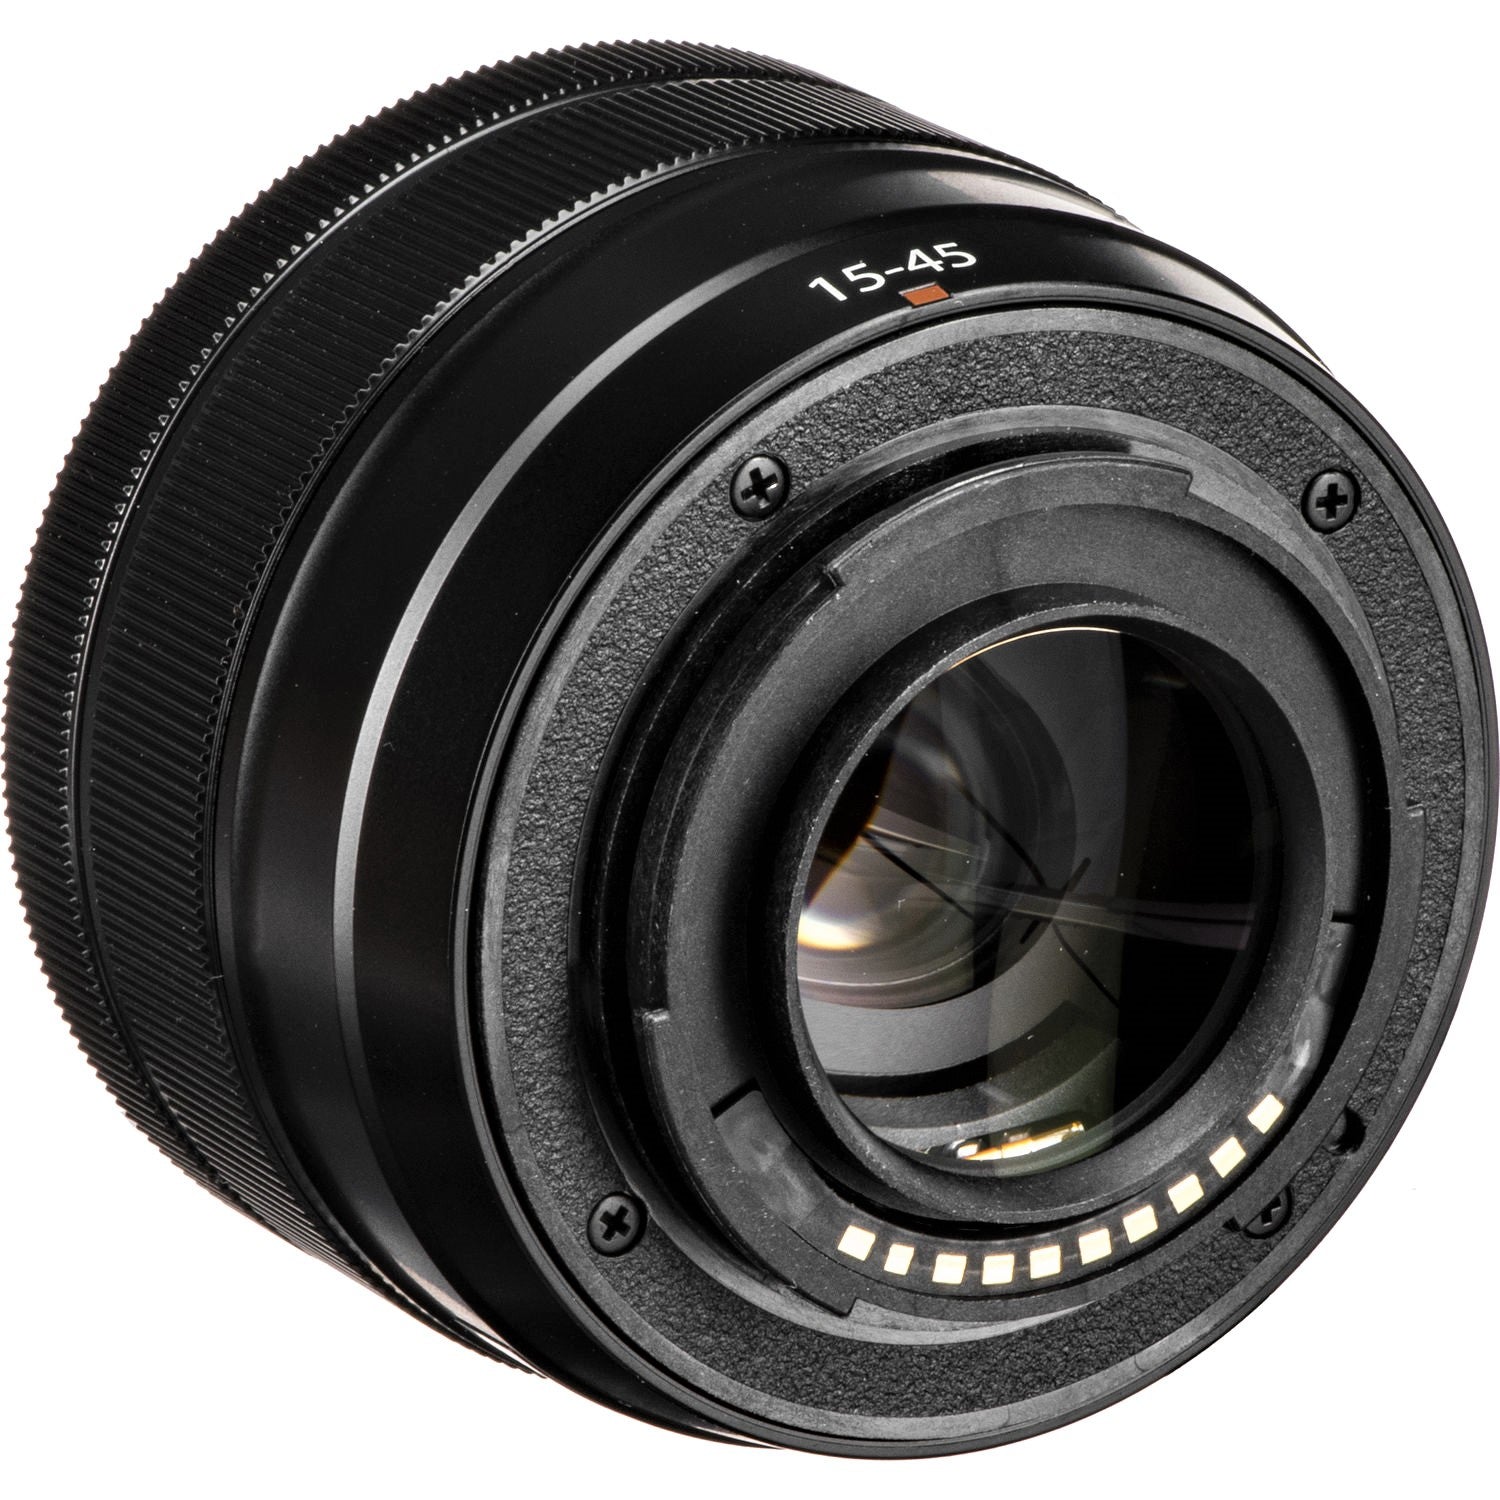 Fujifilm XC 15-45mm f/3.5-5.6 OIS PZ Lens - Back Side View